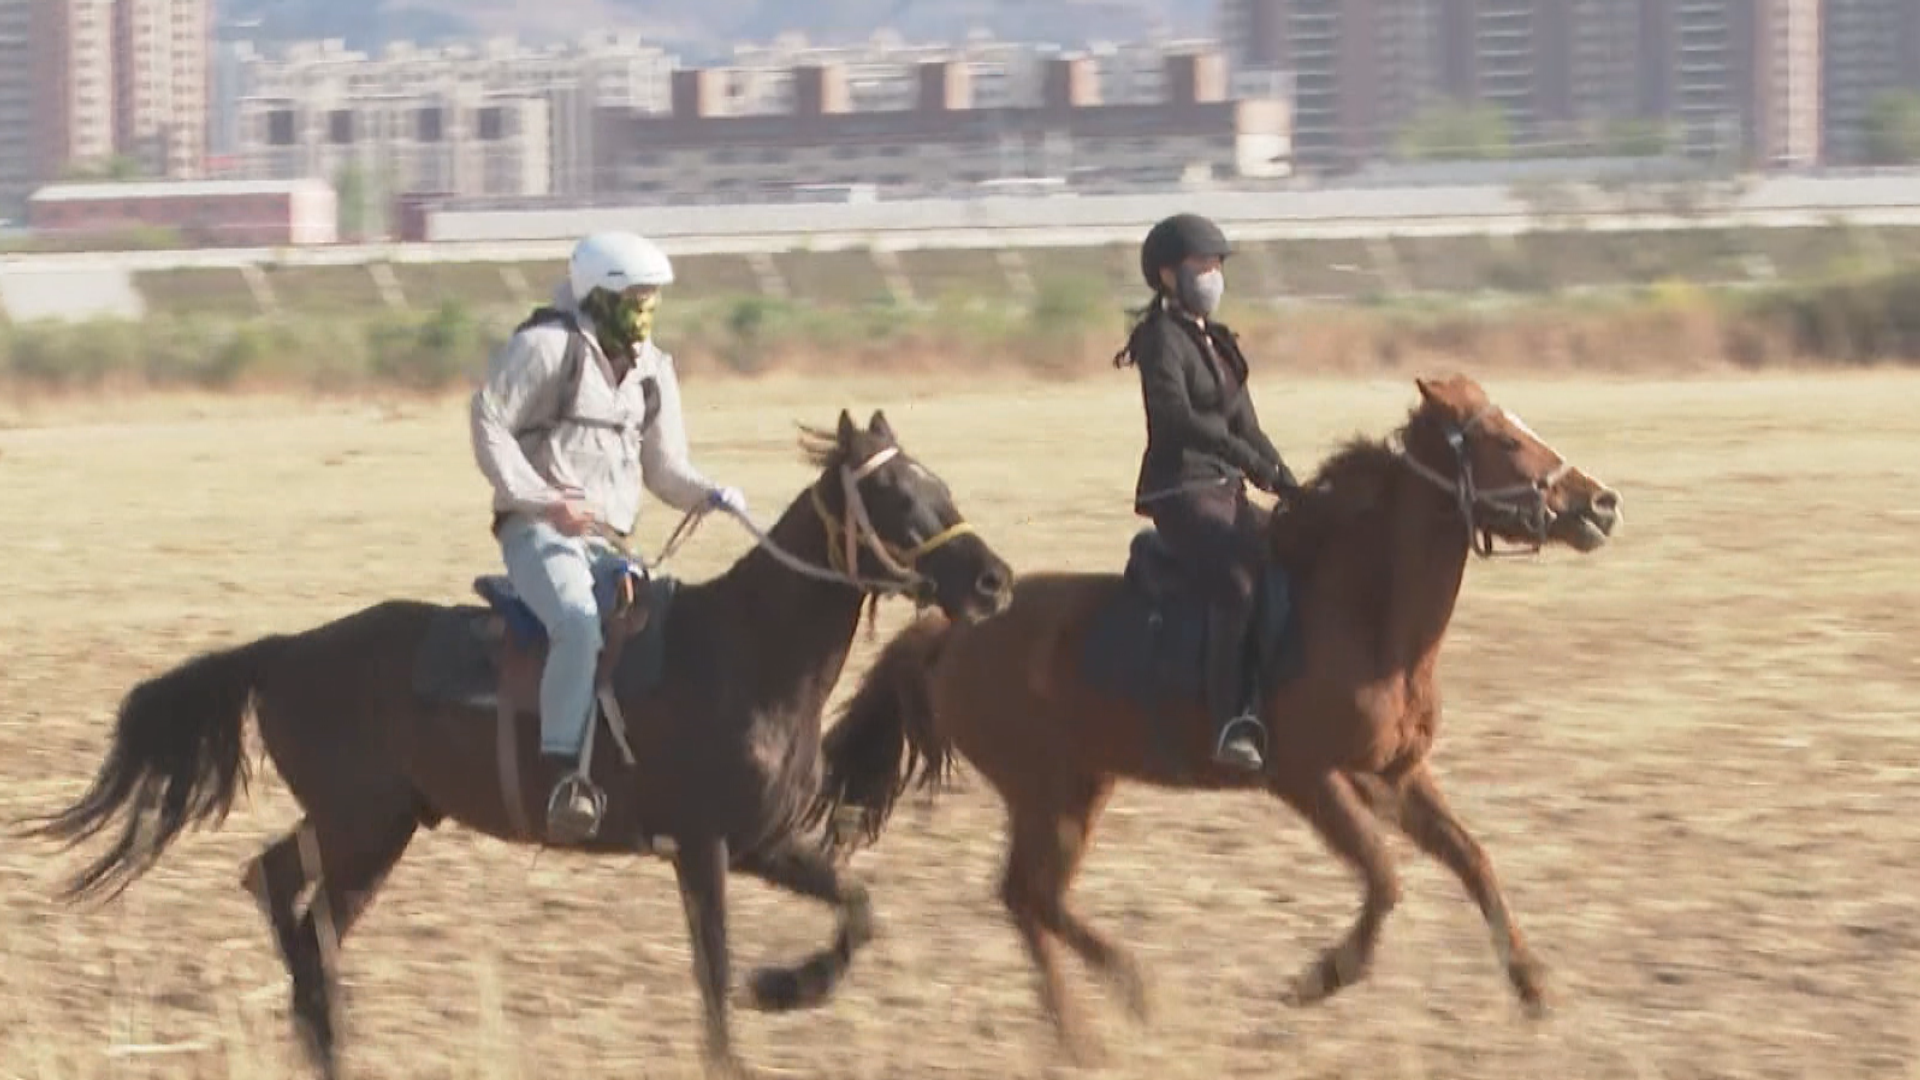 【首都專線】五一黃金周將至 騎馬等新興活動受歡迎